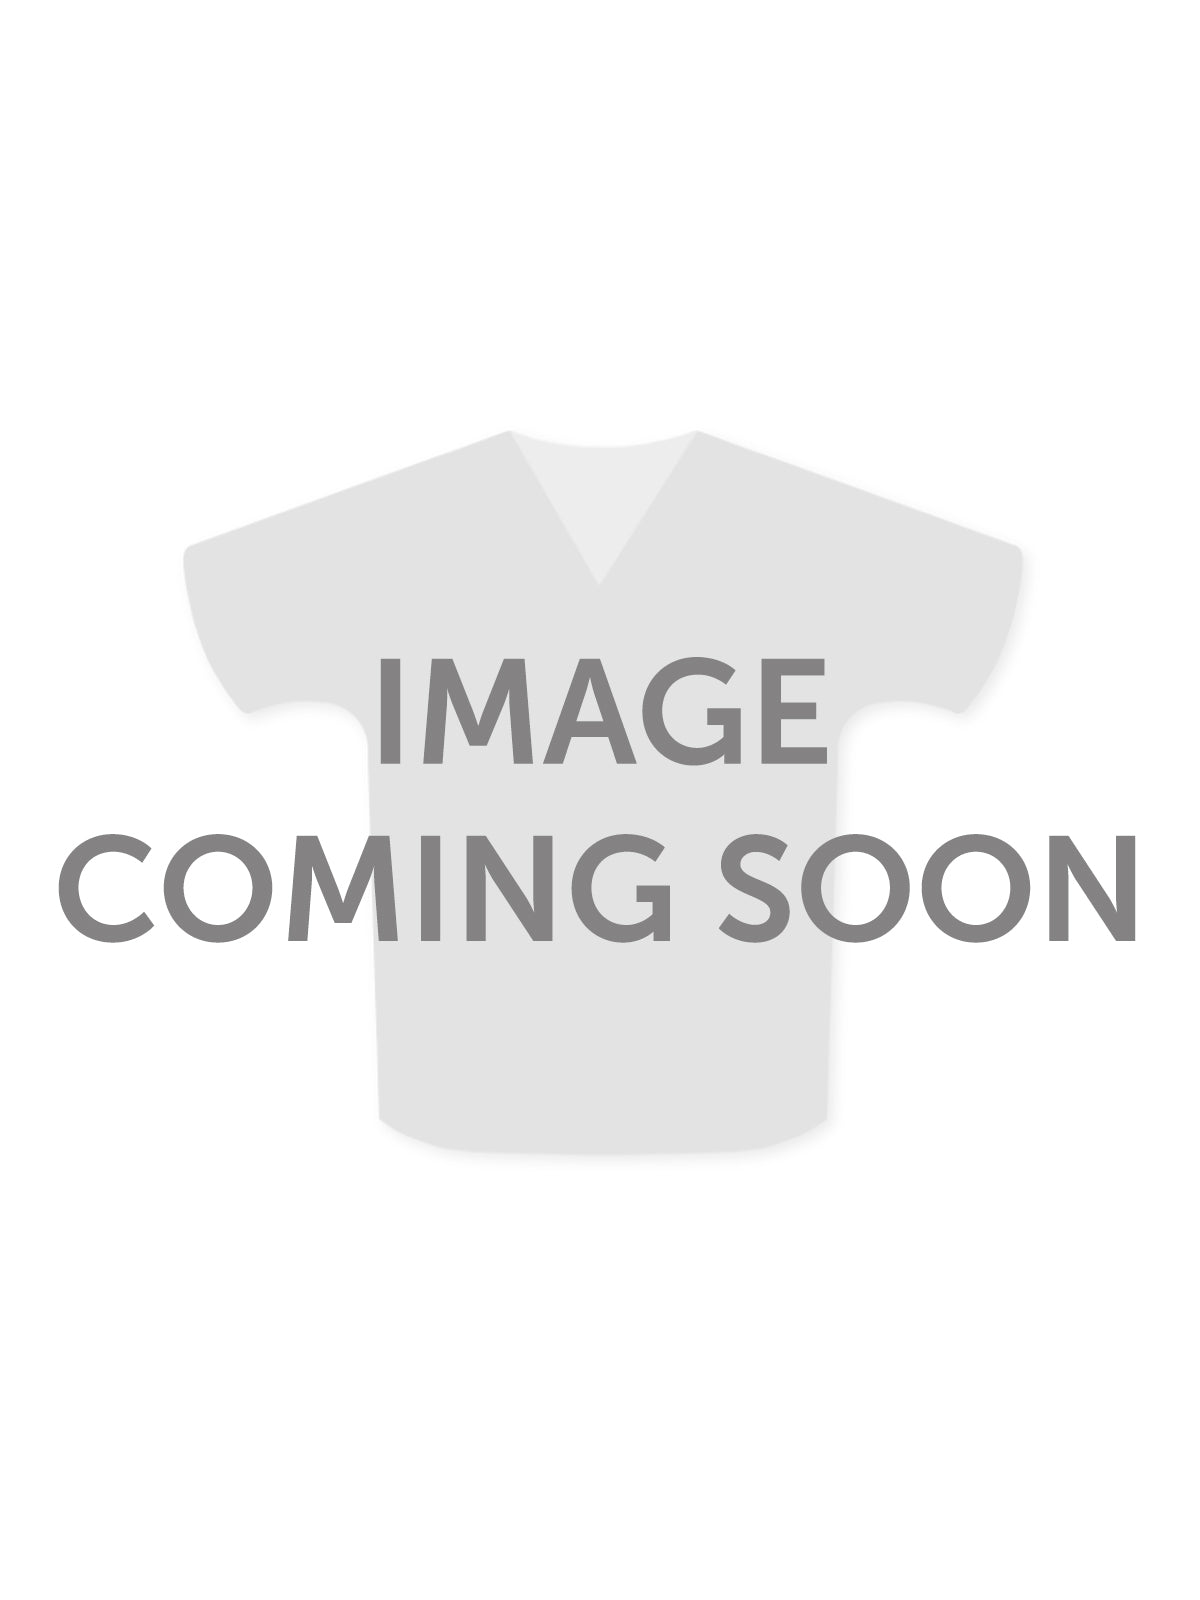 Unisex Patient Gown - 45289 - Teal Diamond